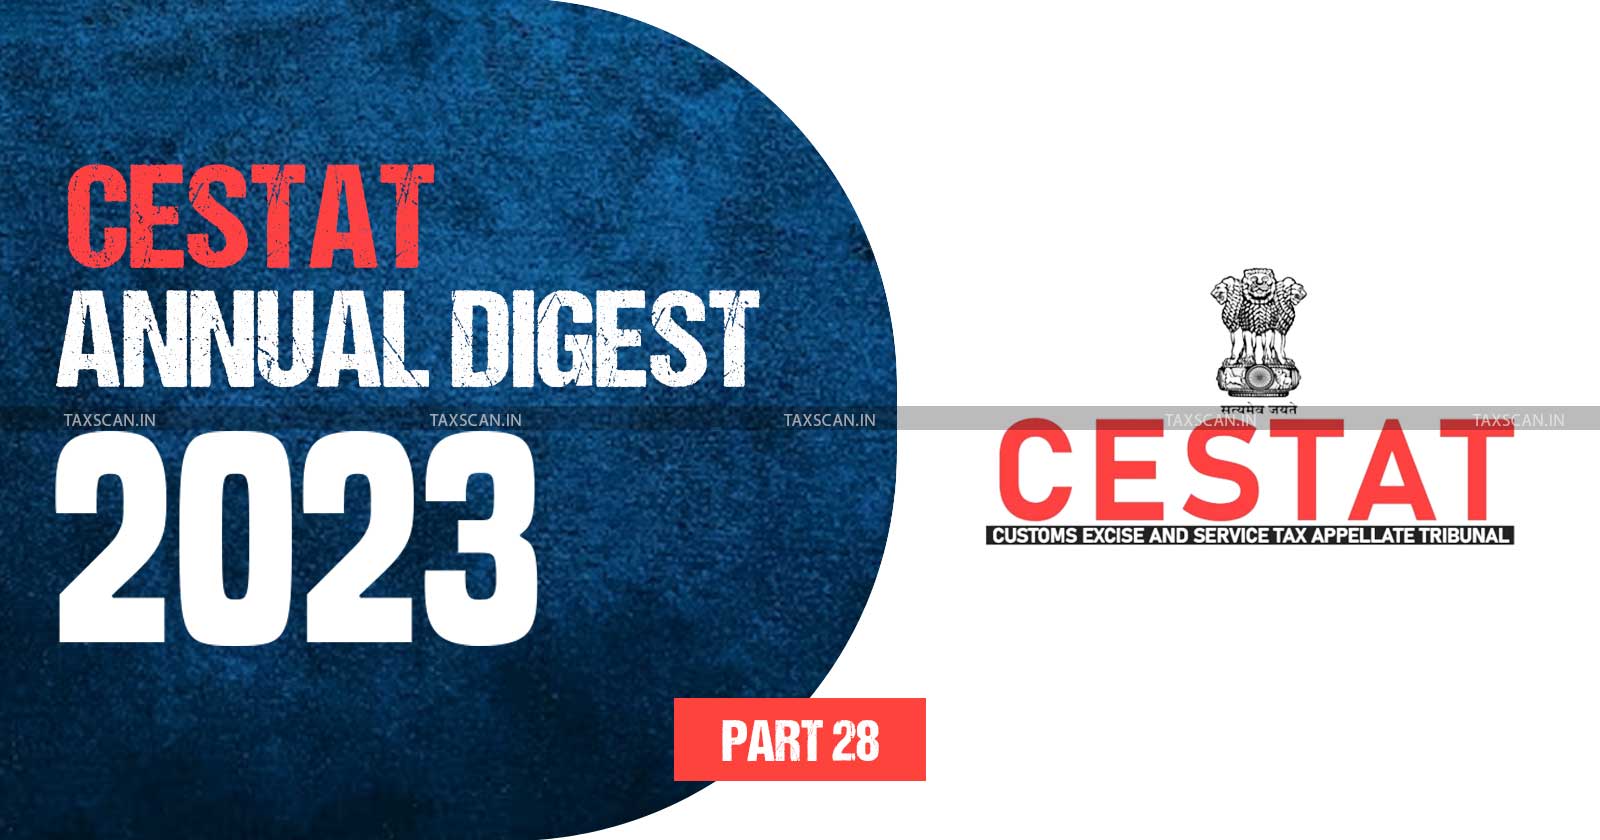 Annual Digest 2023 - CESTAT Annual Digest 2023 - cestat - PART 28